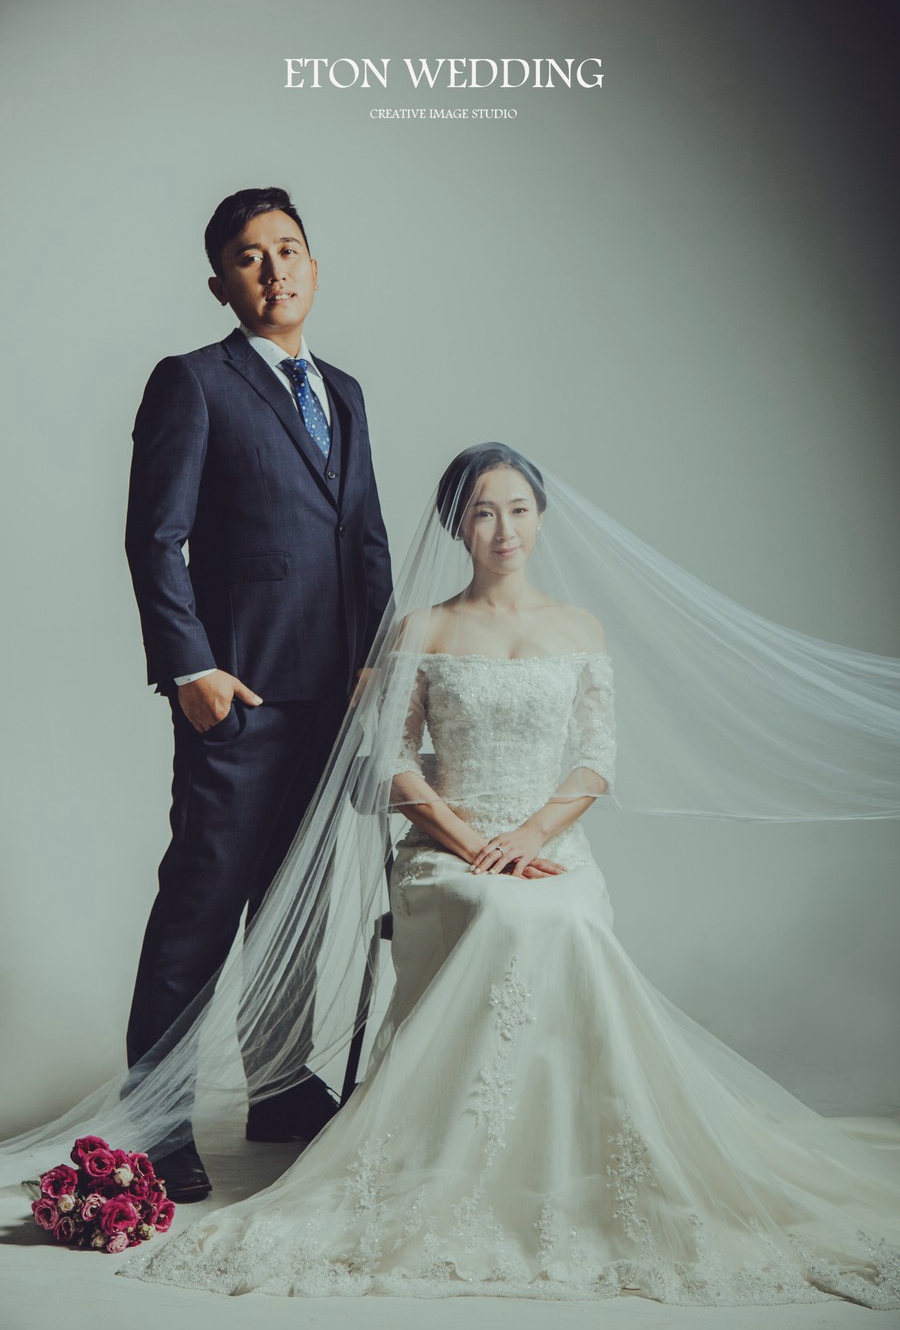 韓系婚紗攝影,婚紗攝影推薦,韓式婚紗攝影,韓系婚紗攝影風格